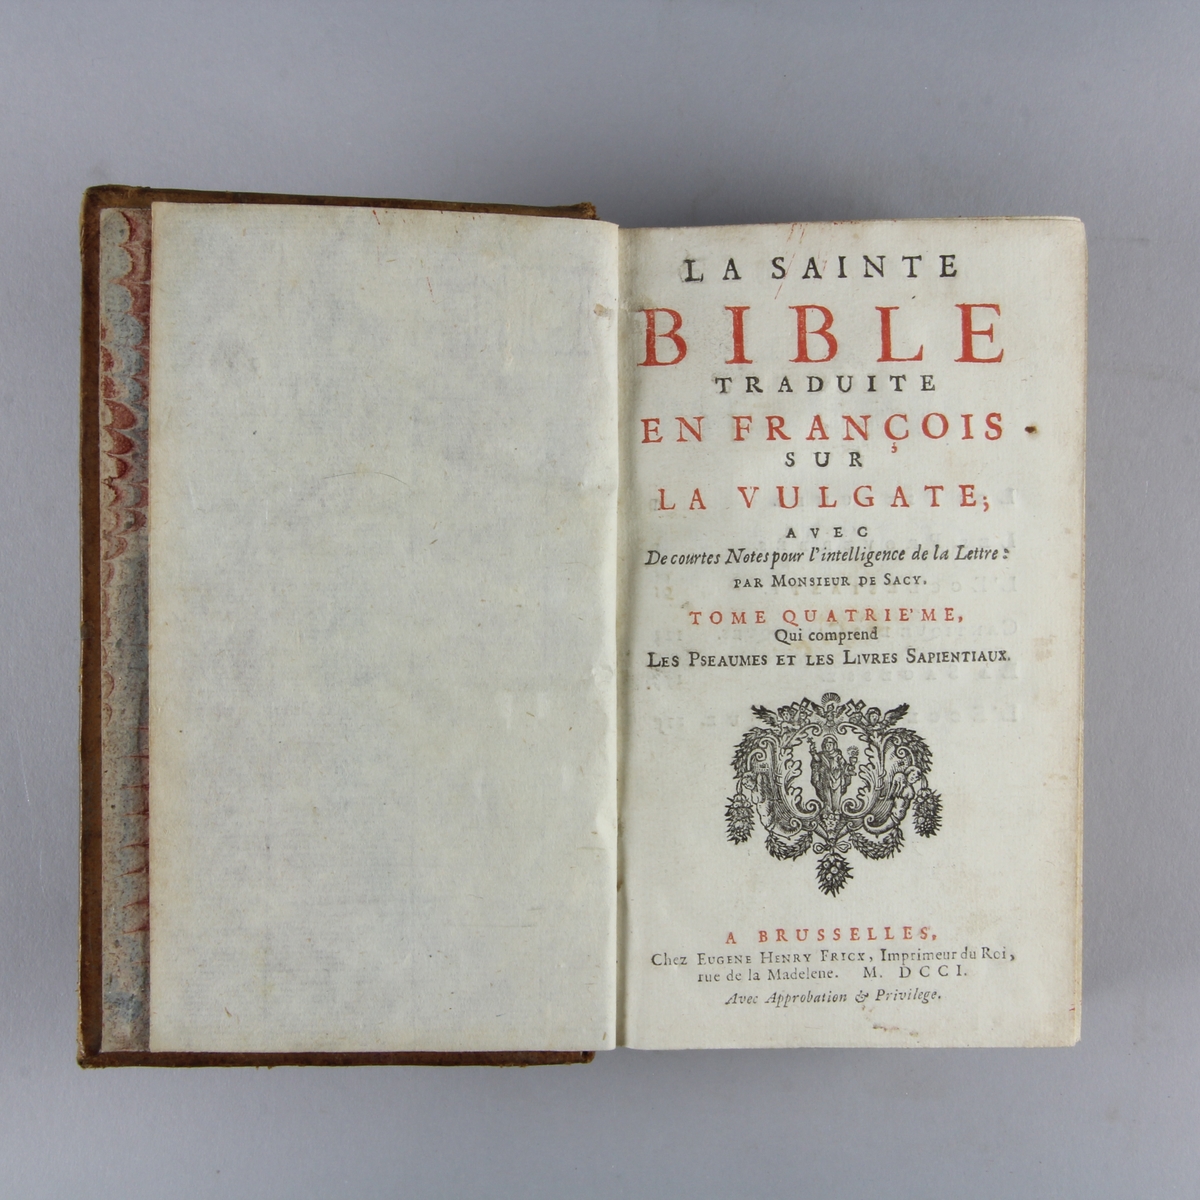 Bok, helfranskt band "La sainte bible traduite en françois sur la Vulgate", del 4. Skinnband med guldpräglad rygg i fem upphöjda bind, skuret rödstänkt snitt. Pärmarnas insidor klädda med marmorerat papper.